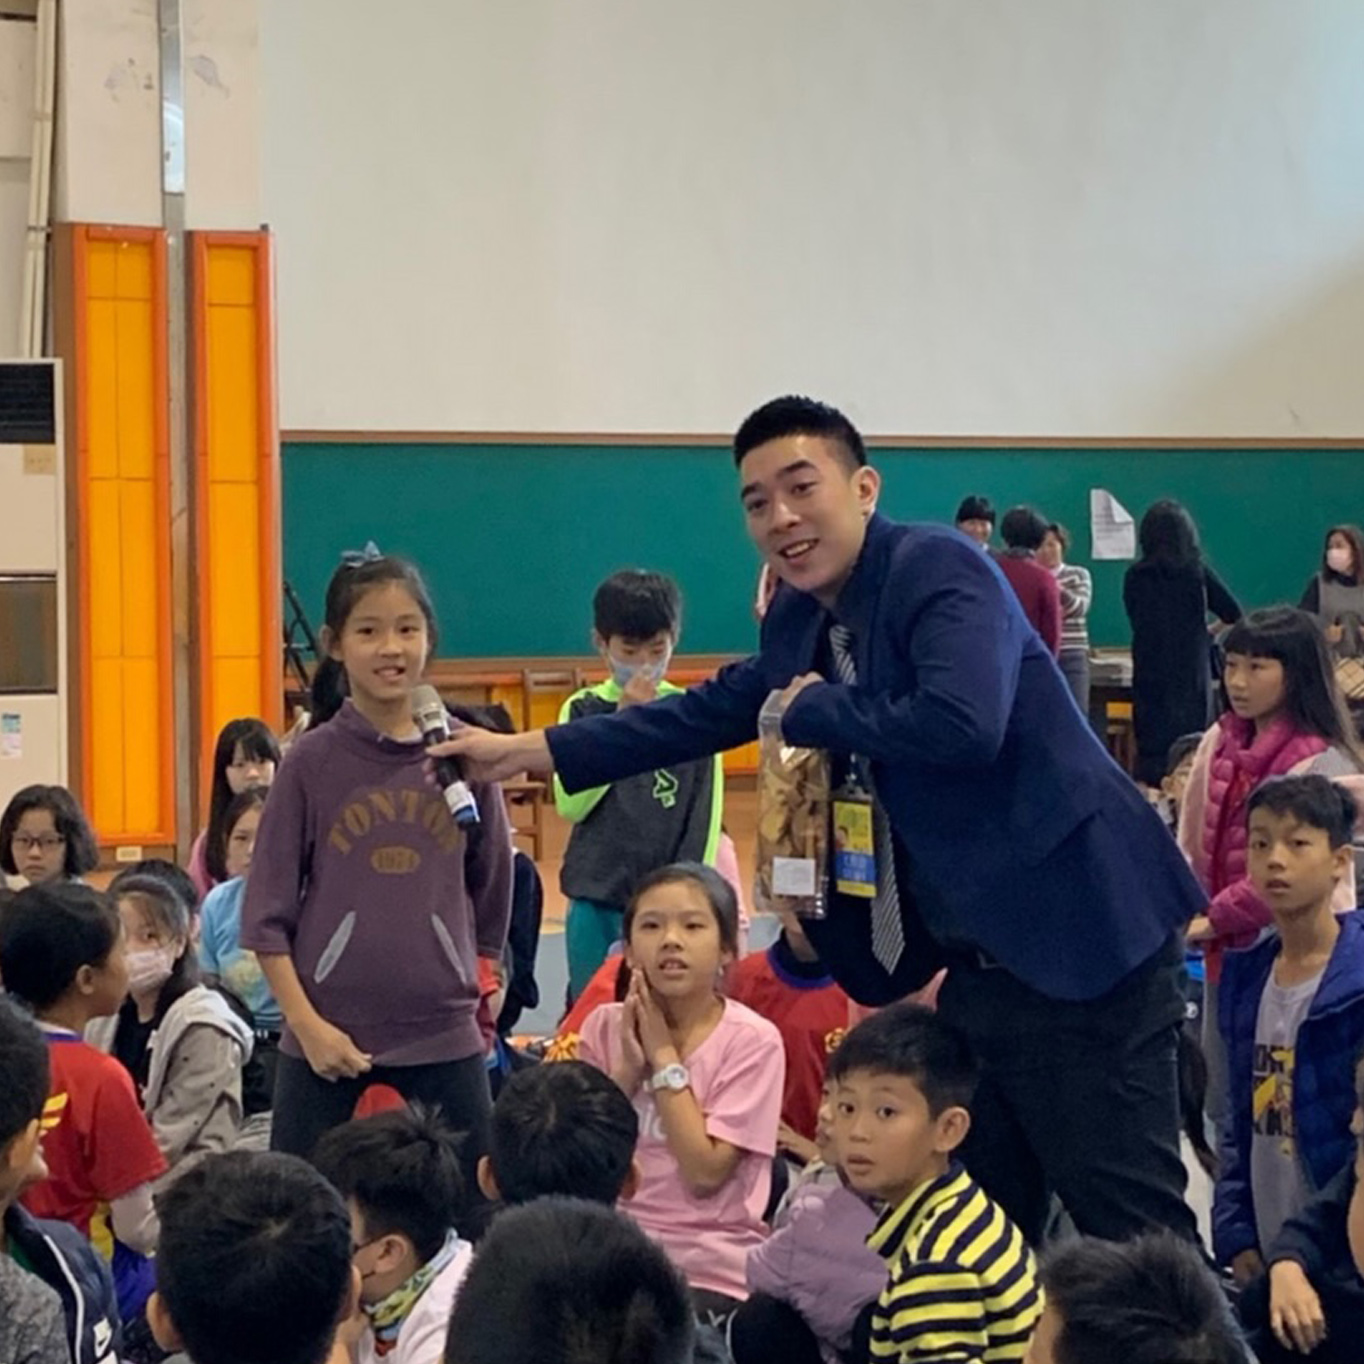 Sinshang Primary School - Education of Taste